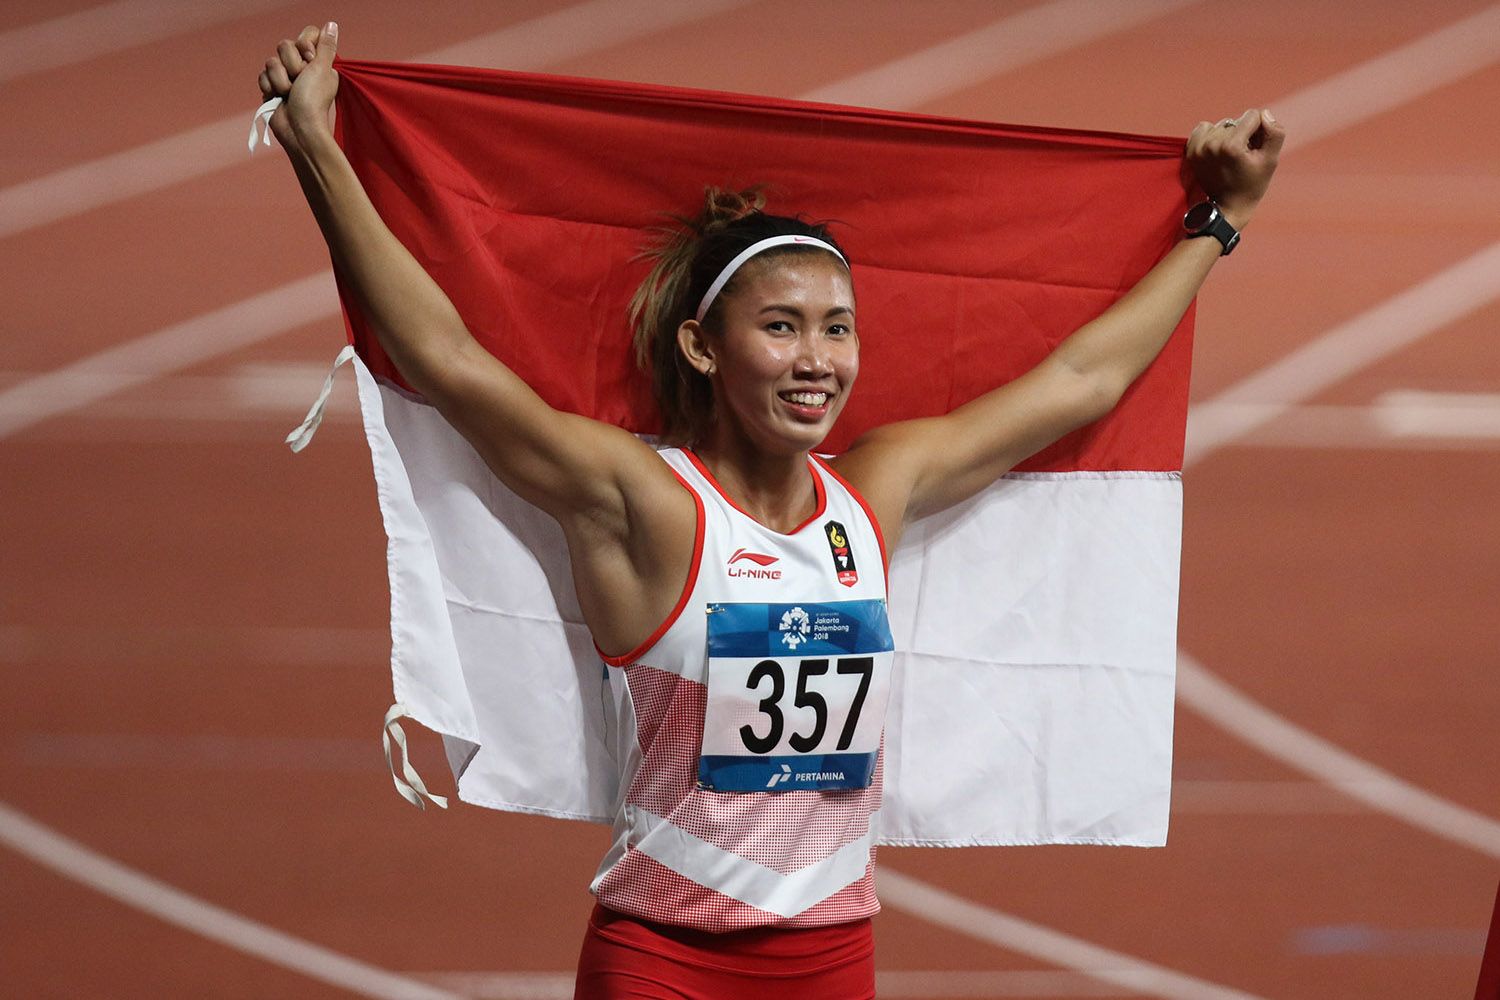 Emilia Nova membentangkan bendera Merah-Putih usai meraih perak lari gawang 100 meter putri Asian Games 2018.